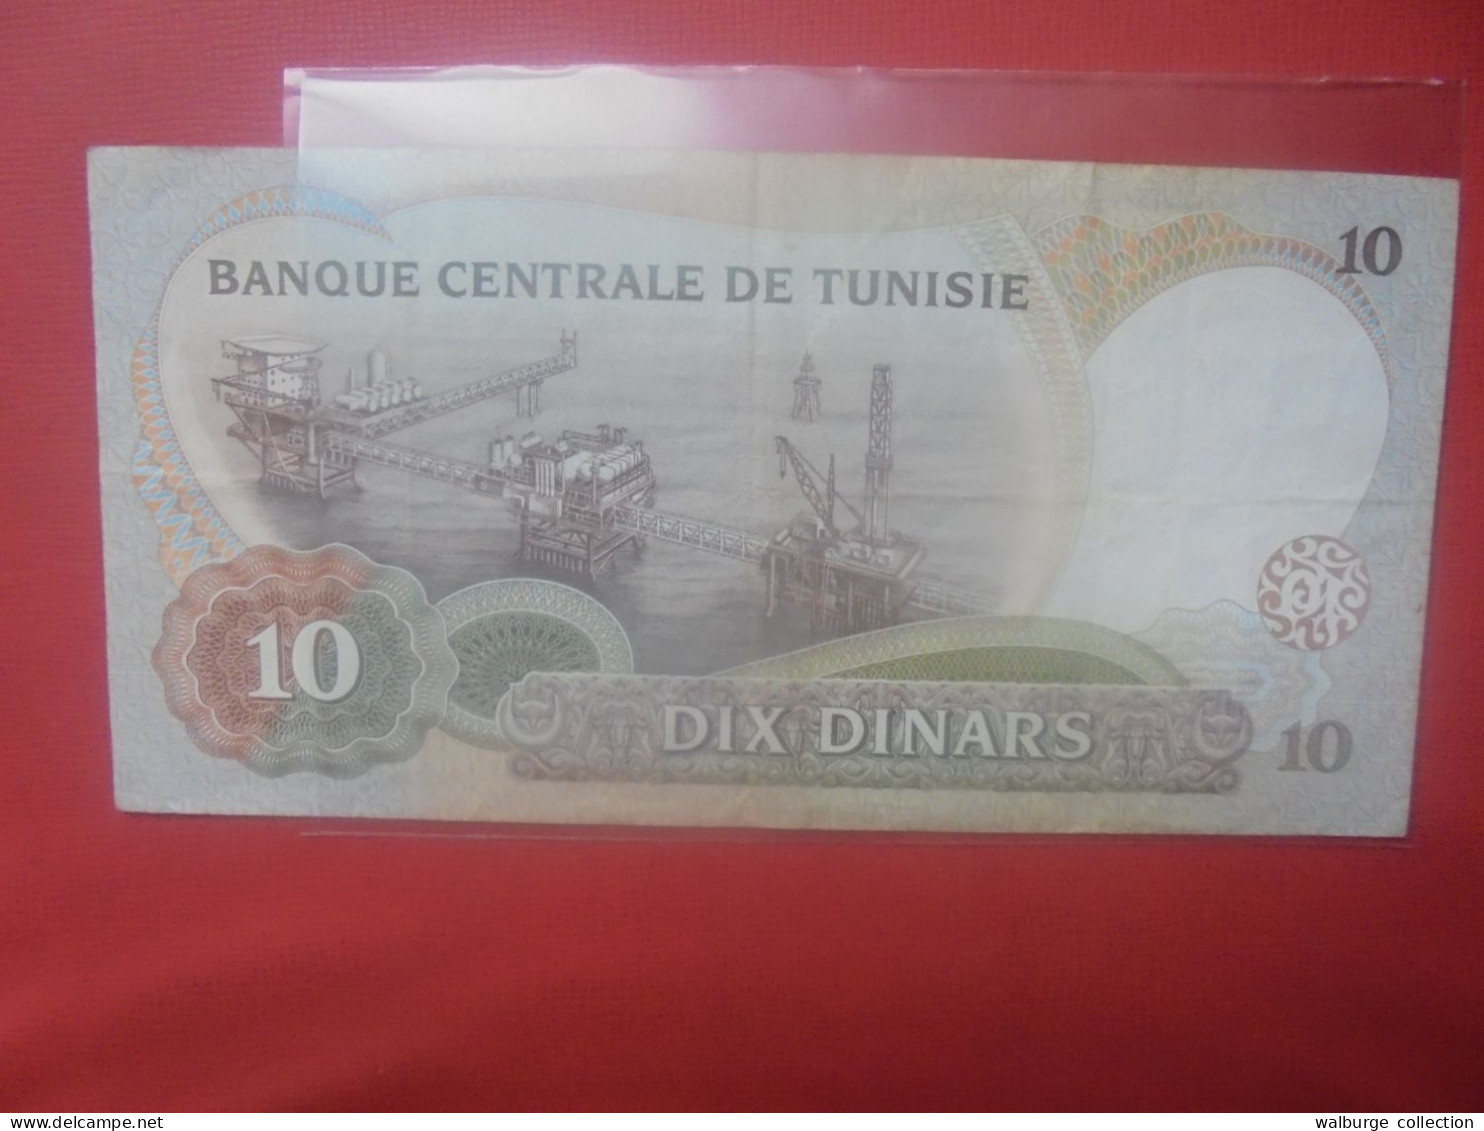 TUNISIE 10 DINARS 1986 Circuler (B.31) - Tunisie